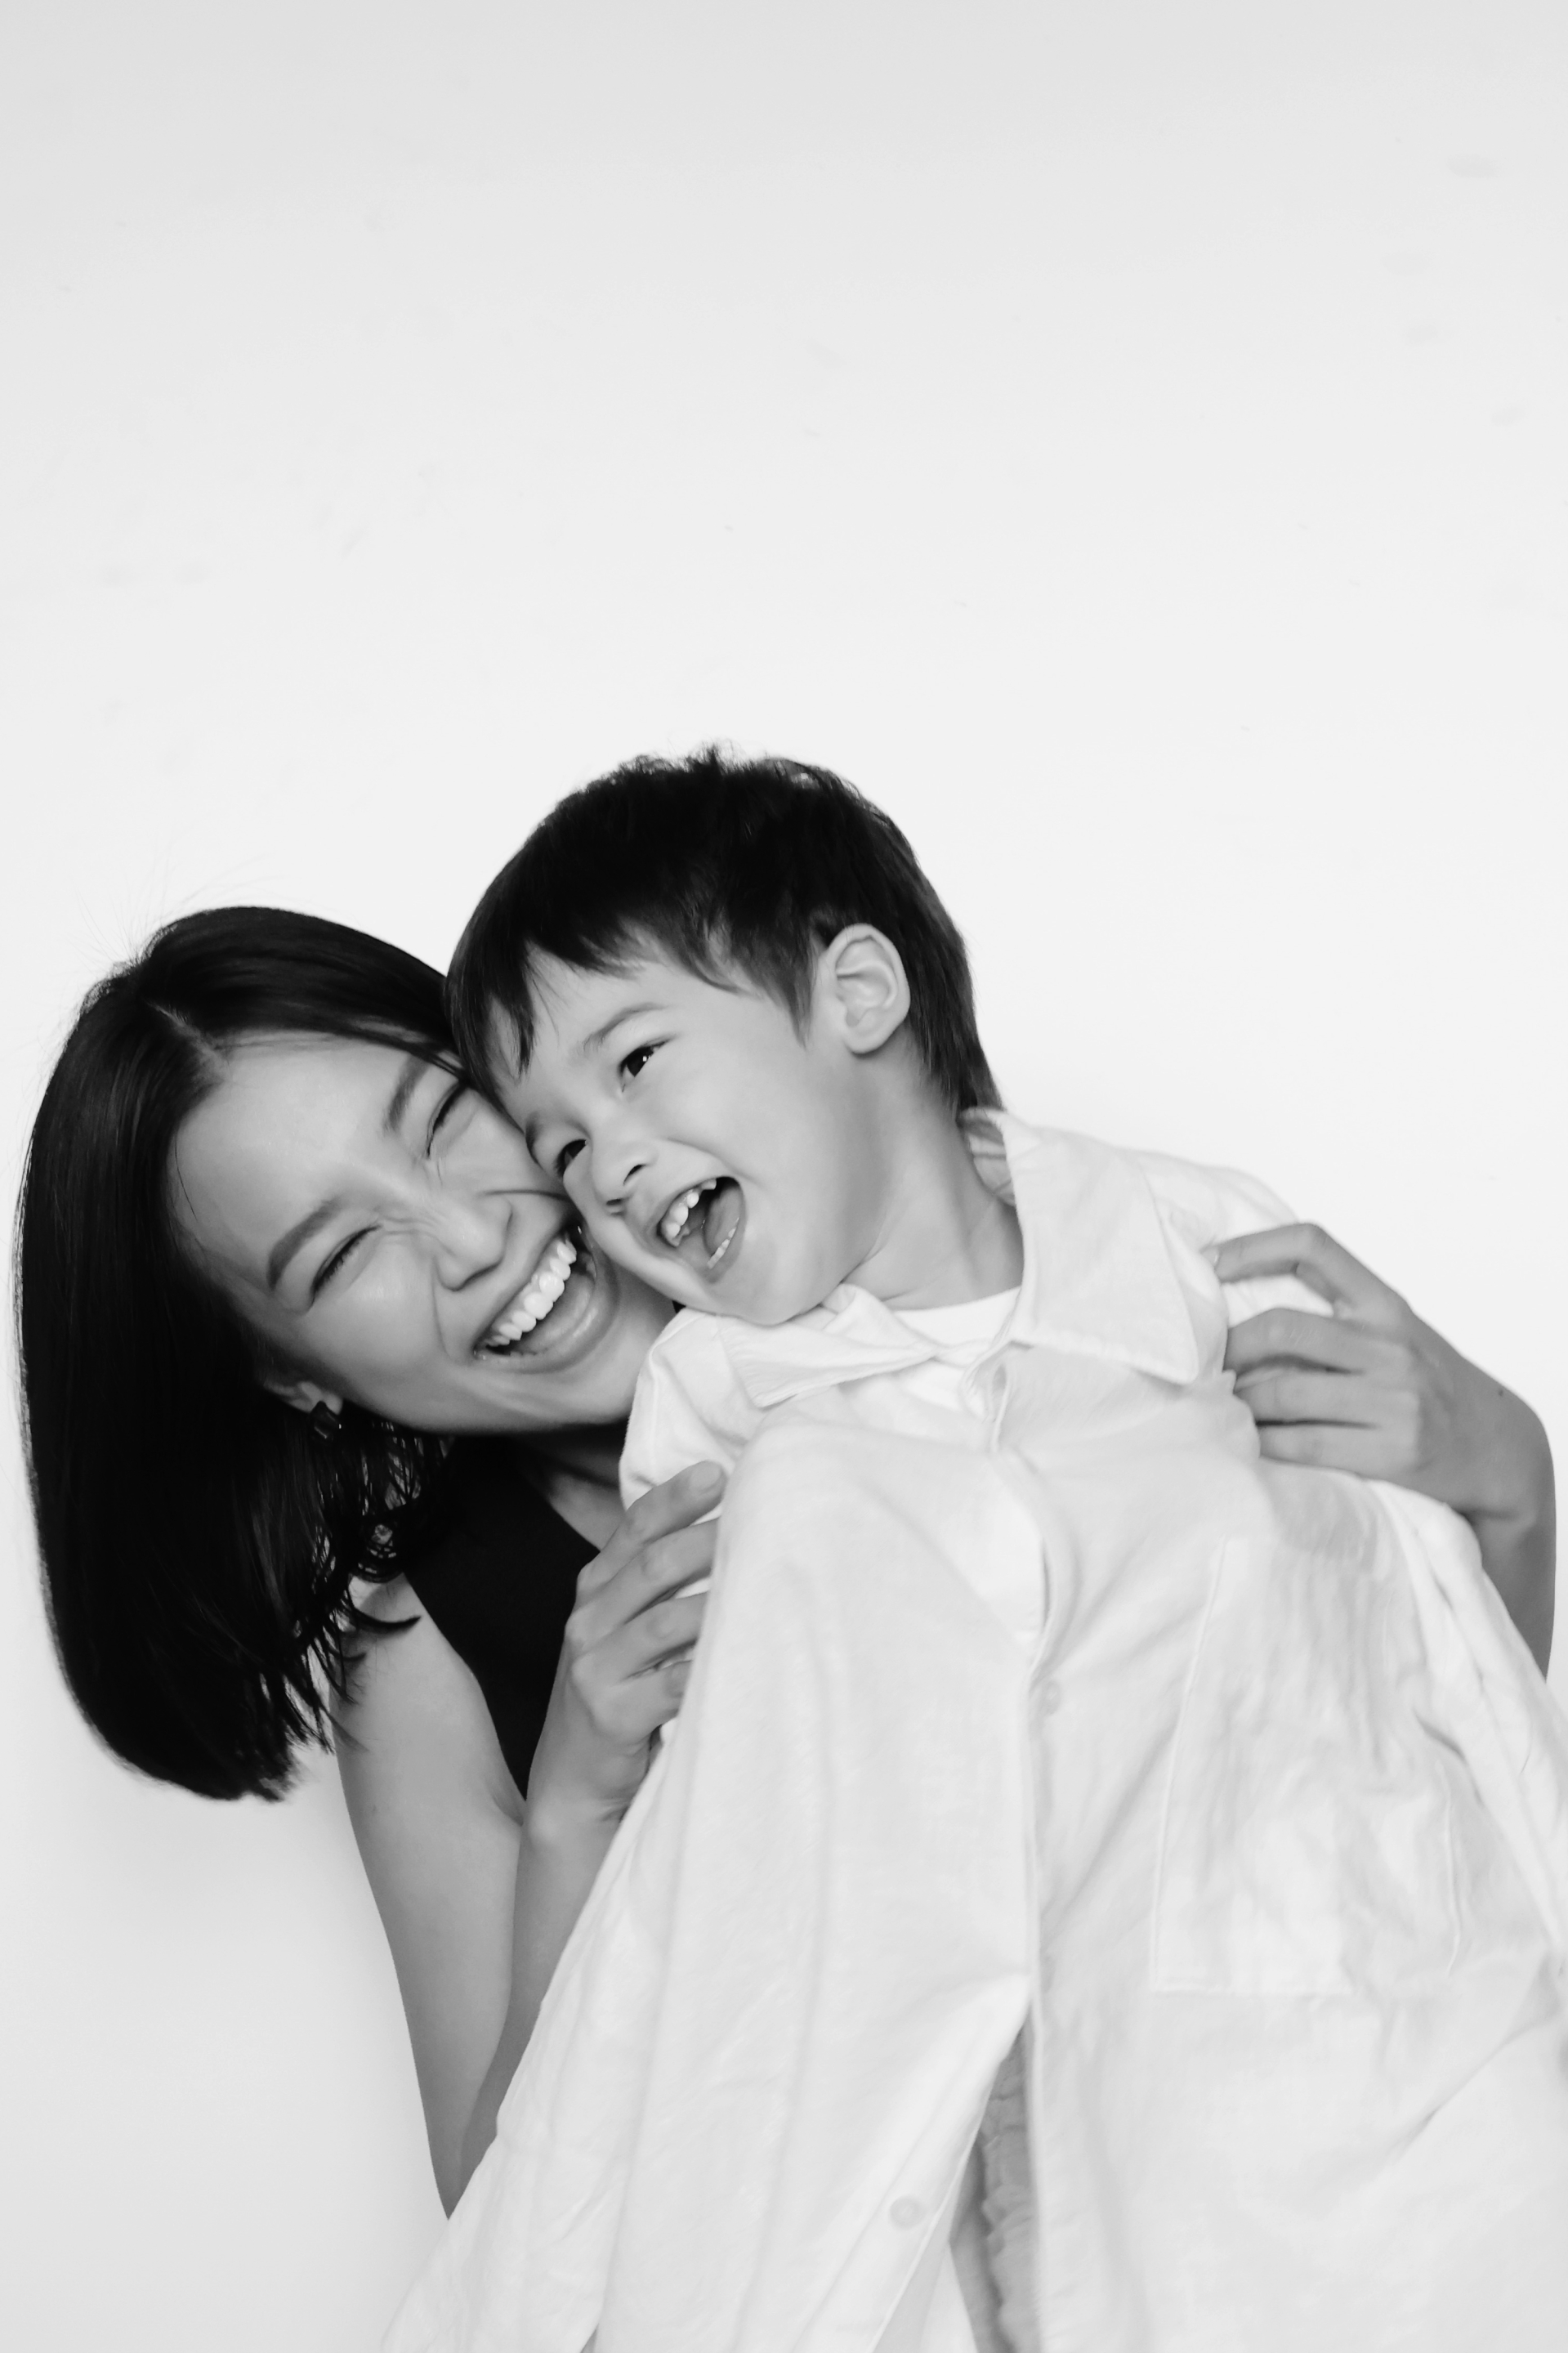 Hoàng Oanh hạnh phúc bên con trai Max - ảnh 2